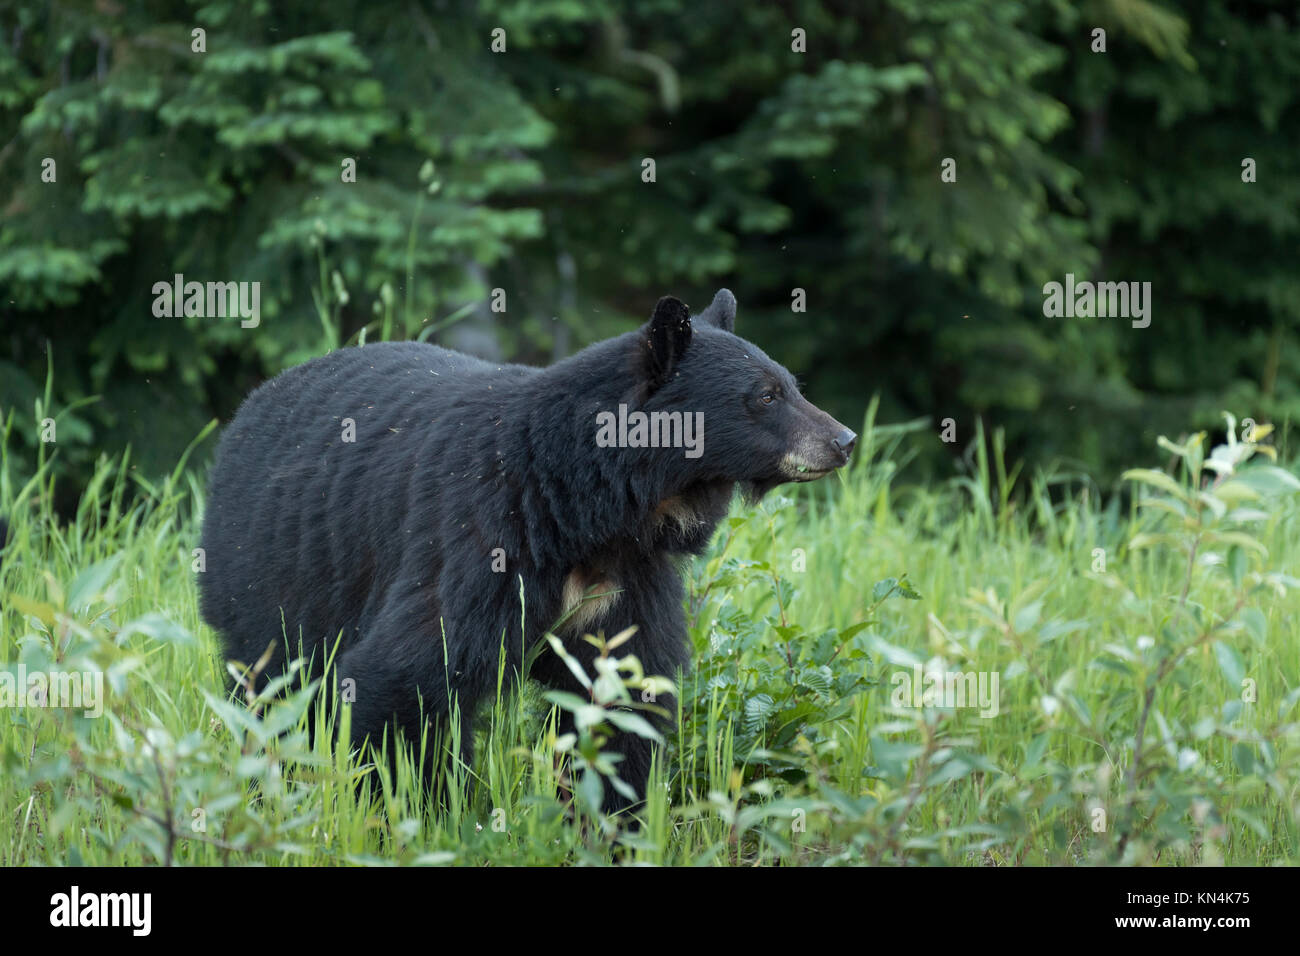 American Black Bear (Ursus americanus), Whistler, British Columbia, Canada Stock Photo